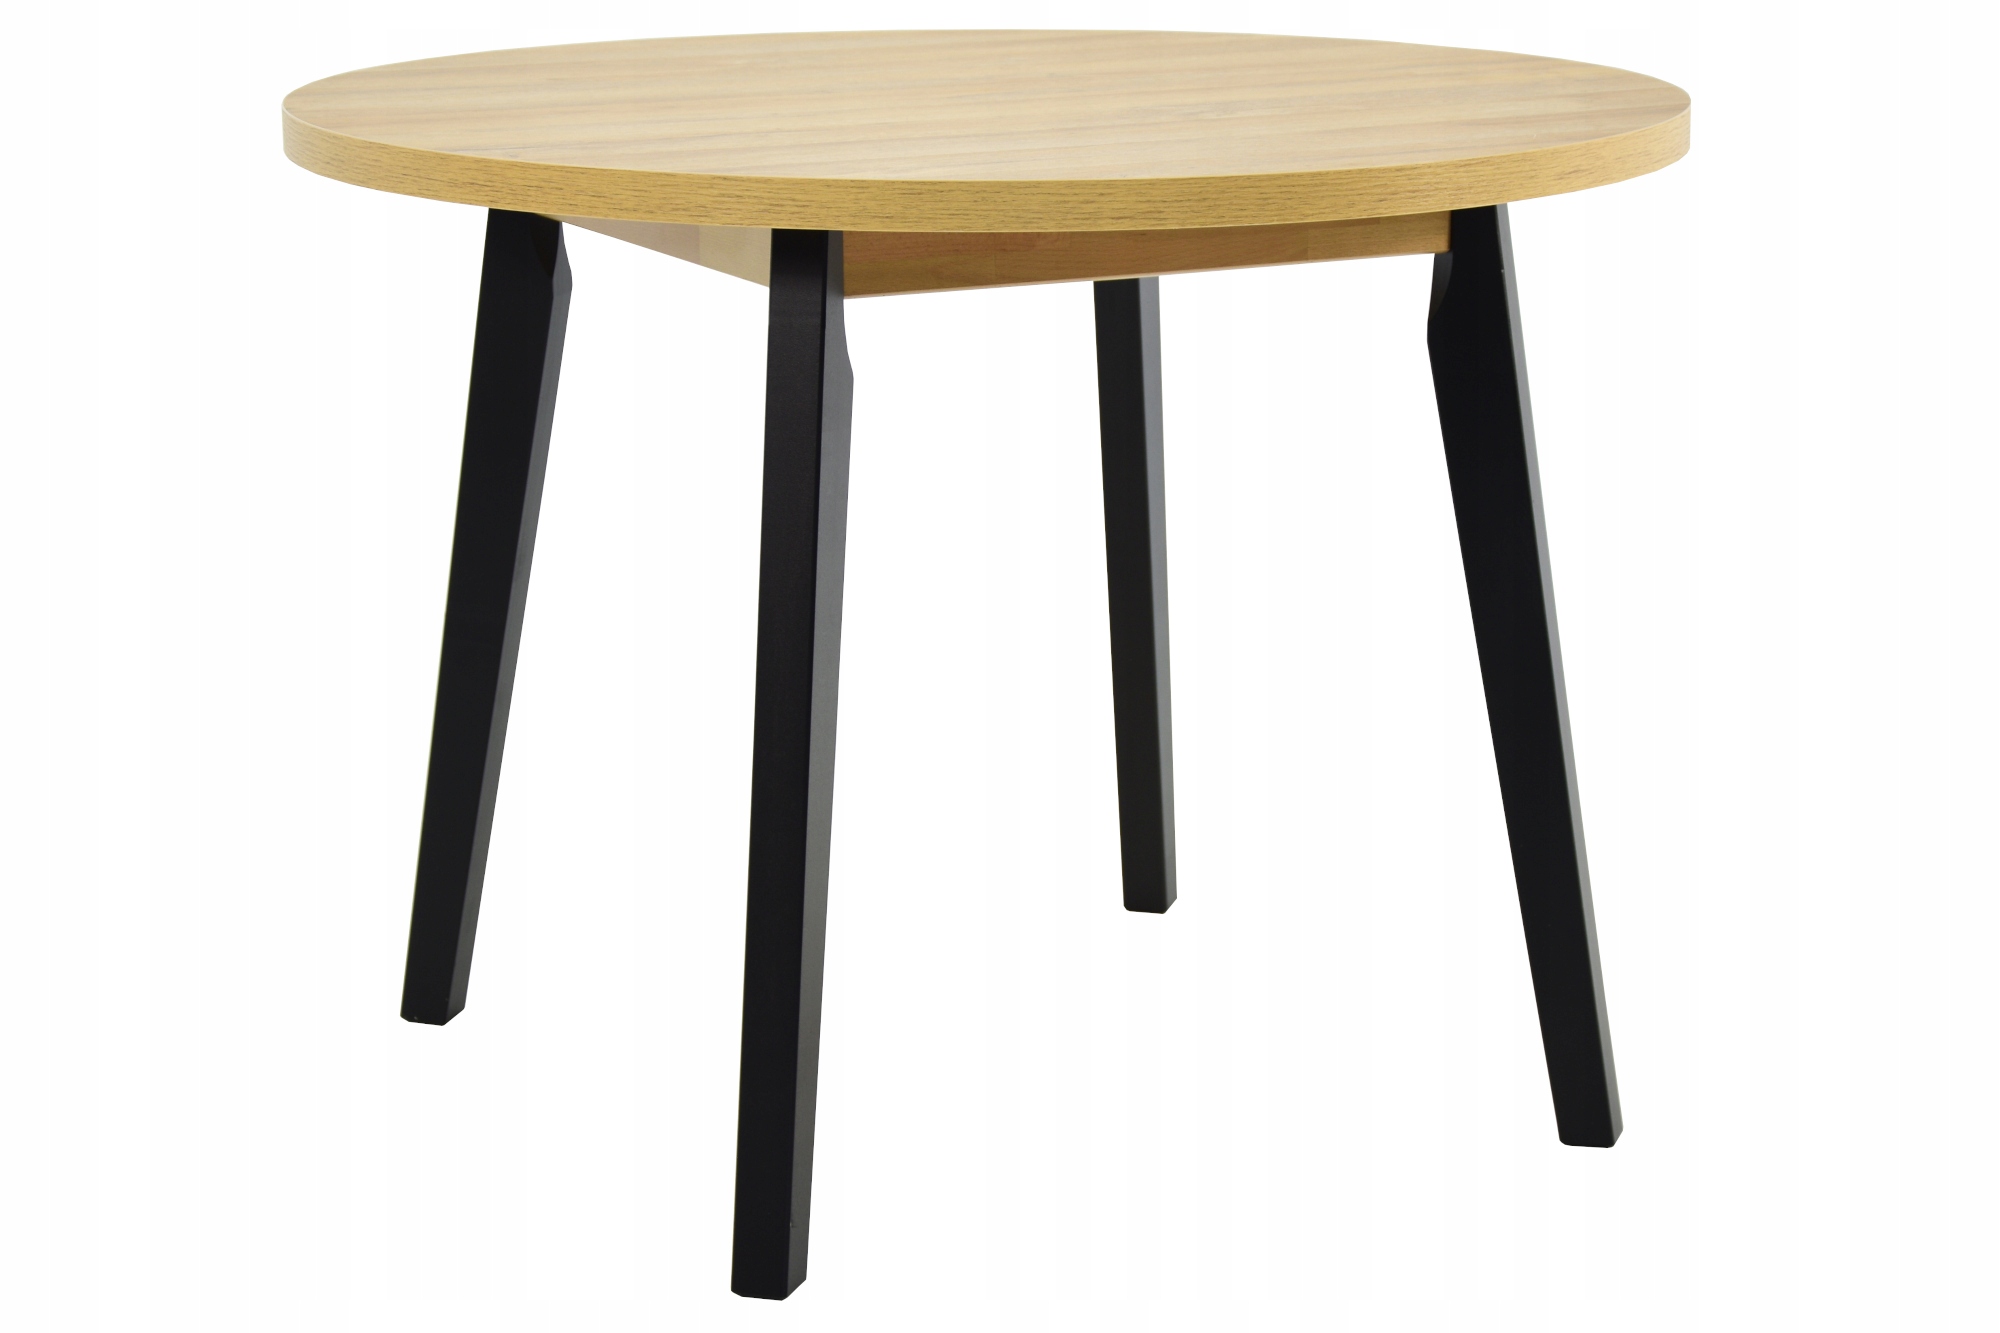 4 скандинавські стільці + круглий стіл 100 см від Interni